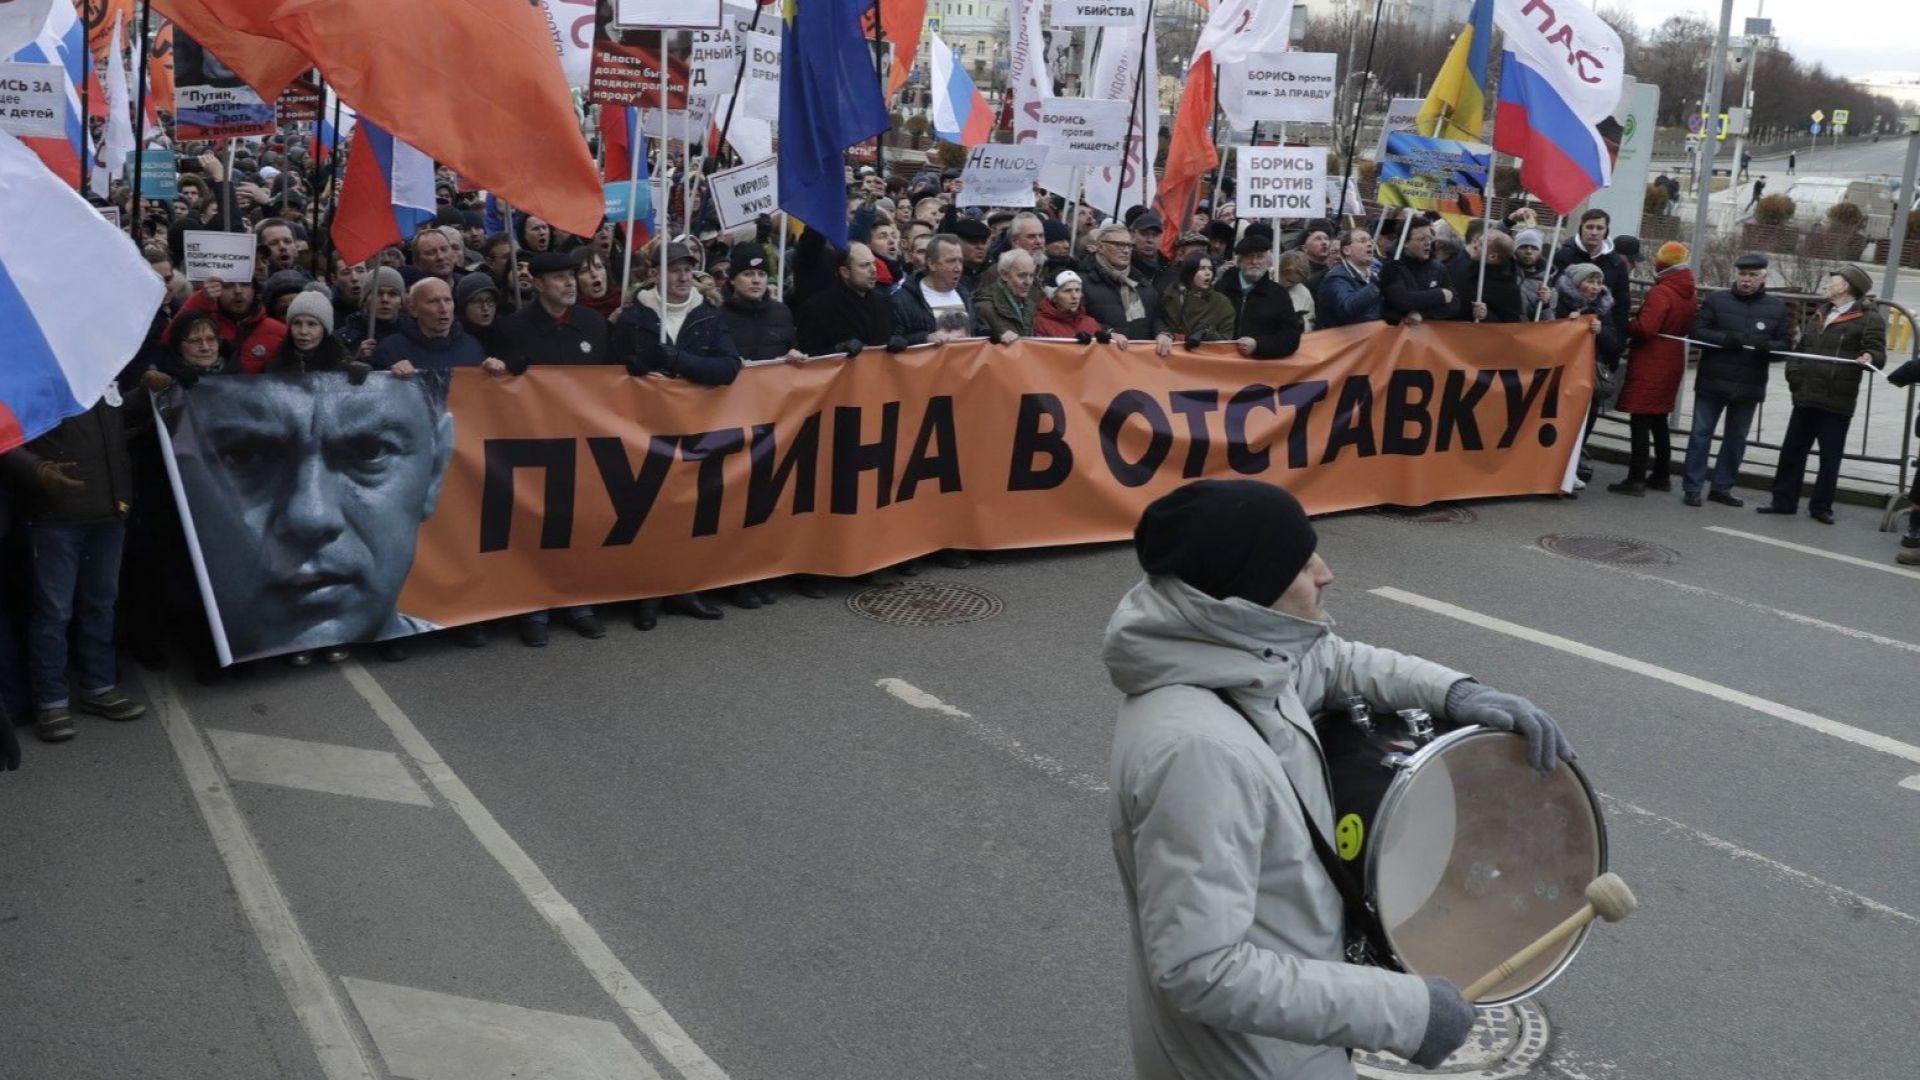 Хиляди привърженици на руската опозиция участваха днес в шествие в